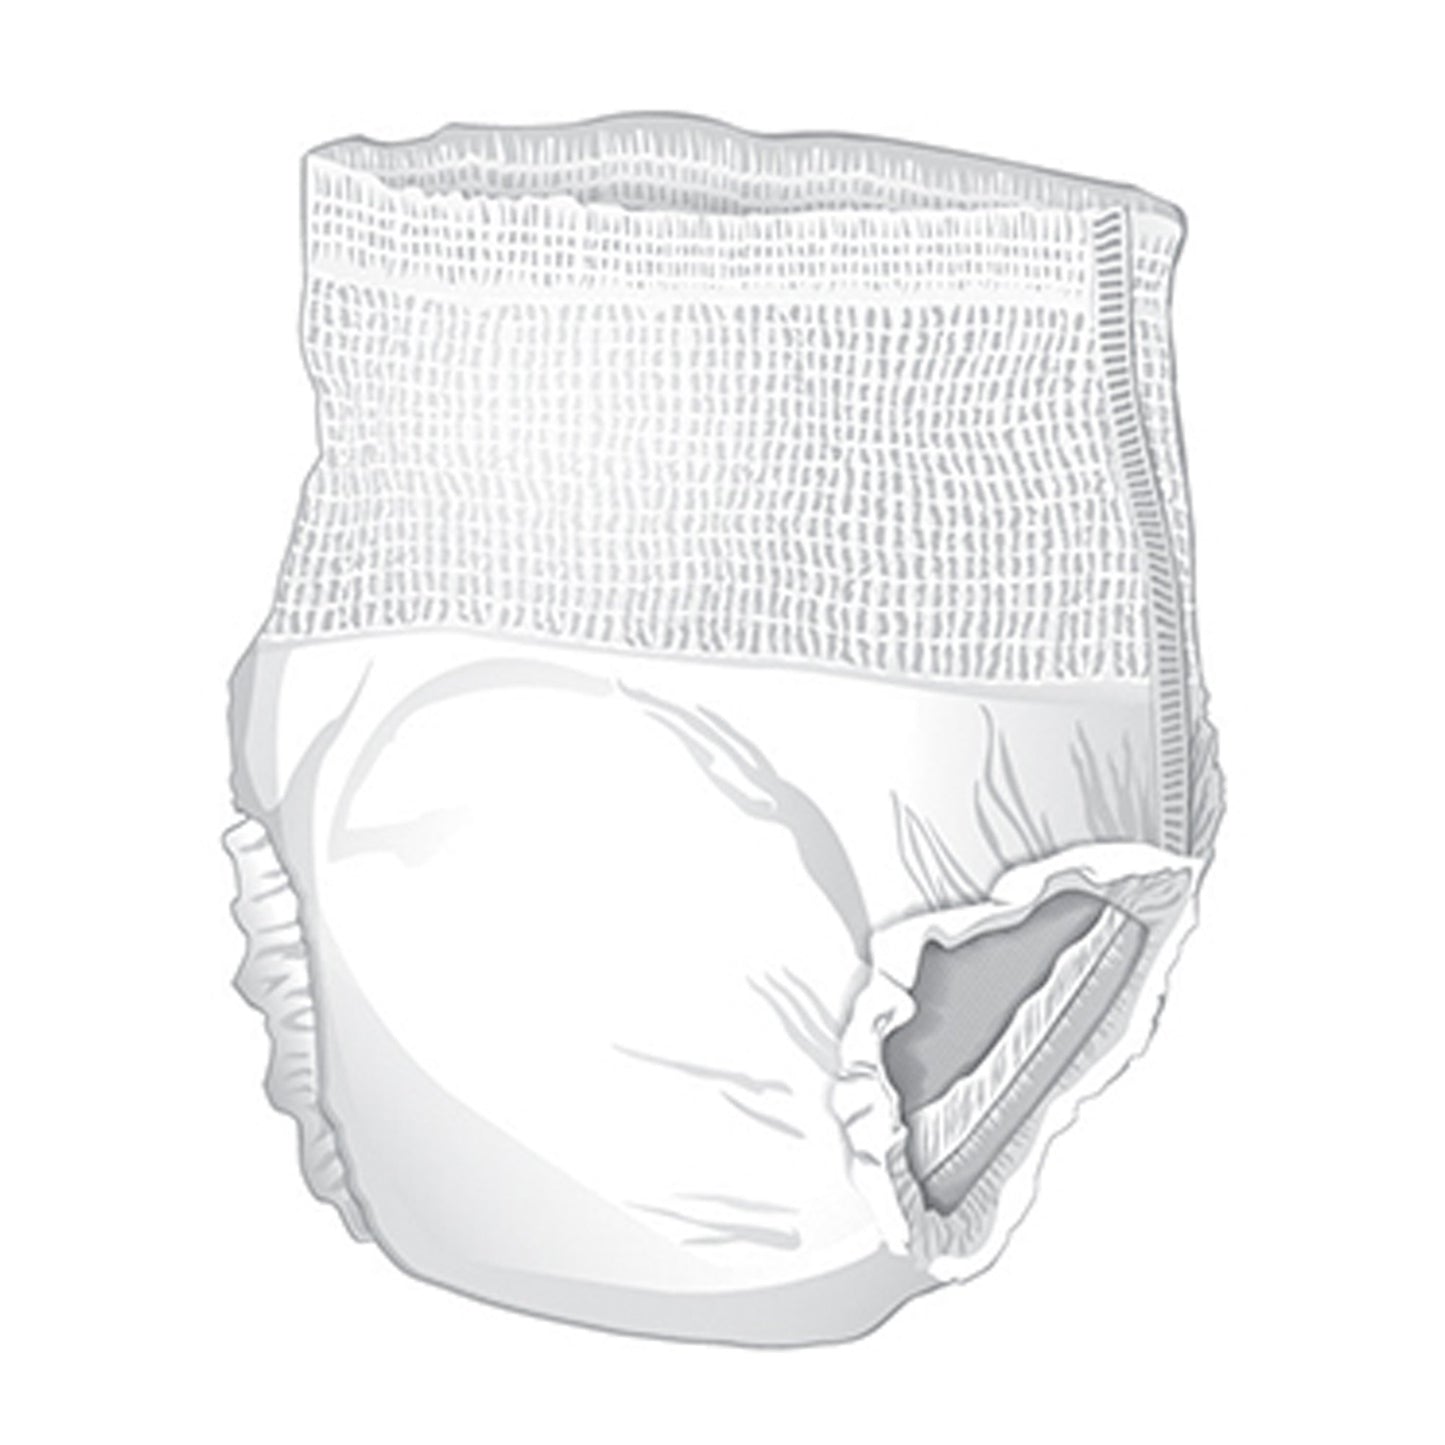 McKesson Extended Wear Maximum Absorbent Underwear, XL, 12 ct